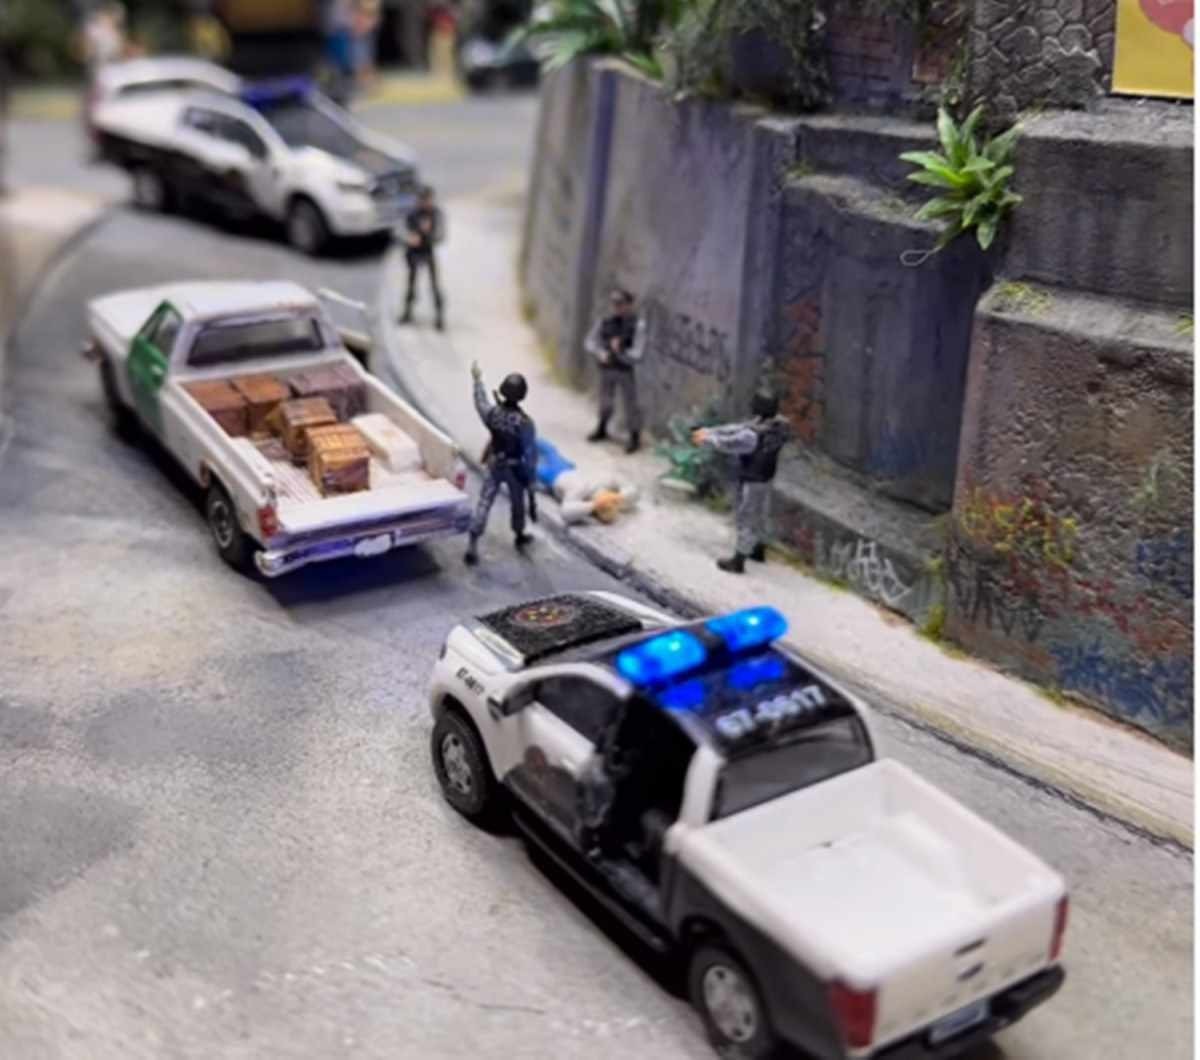 'Cena de crime no Rio' é retratada por museu de miniaturas e causa polêmica